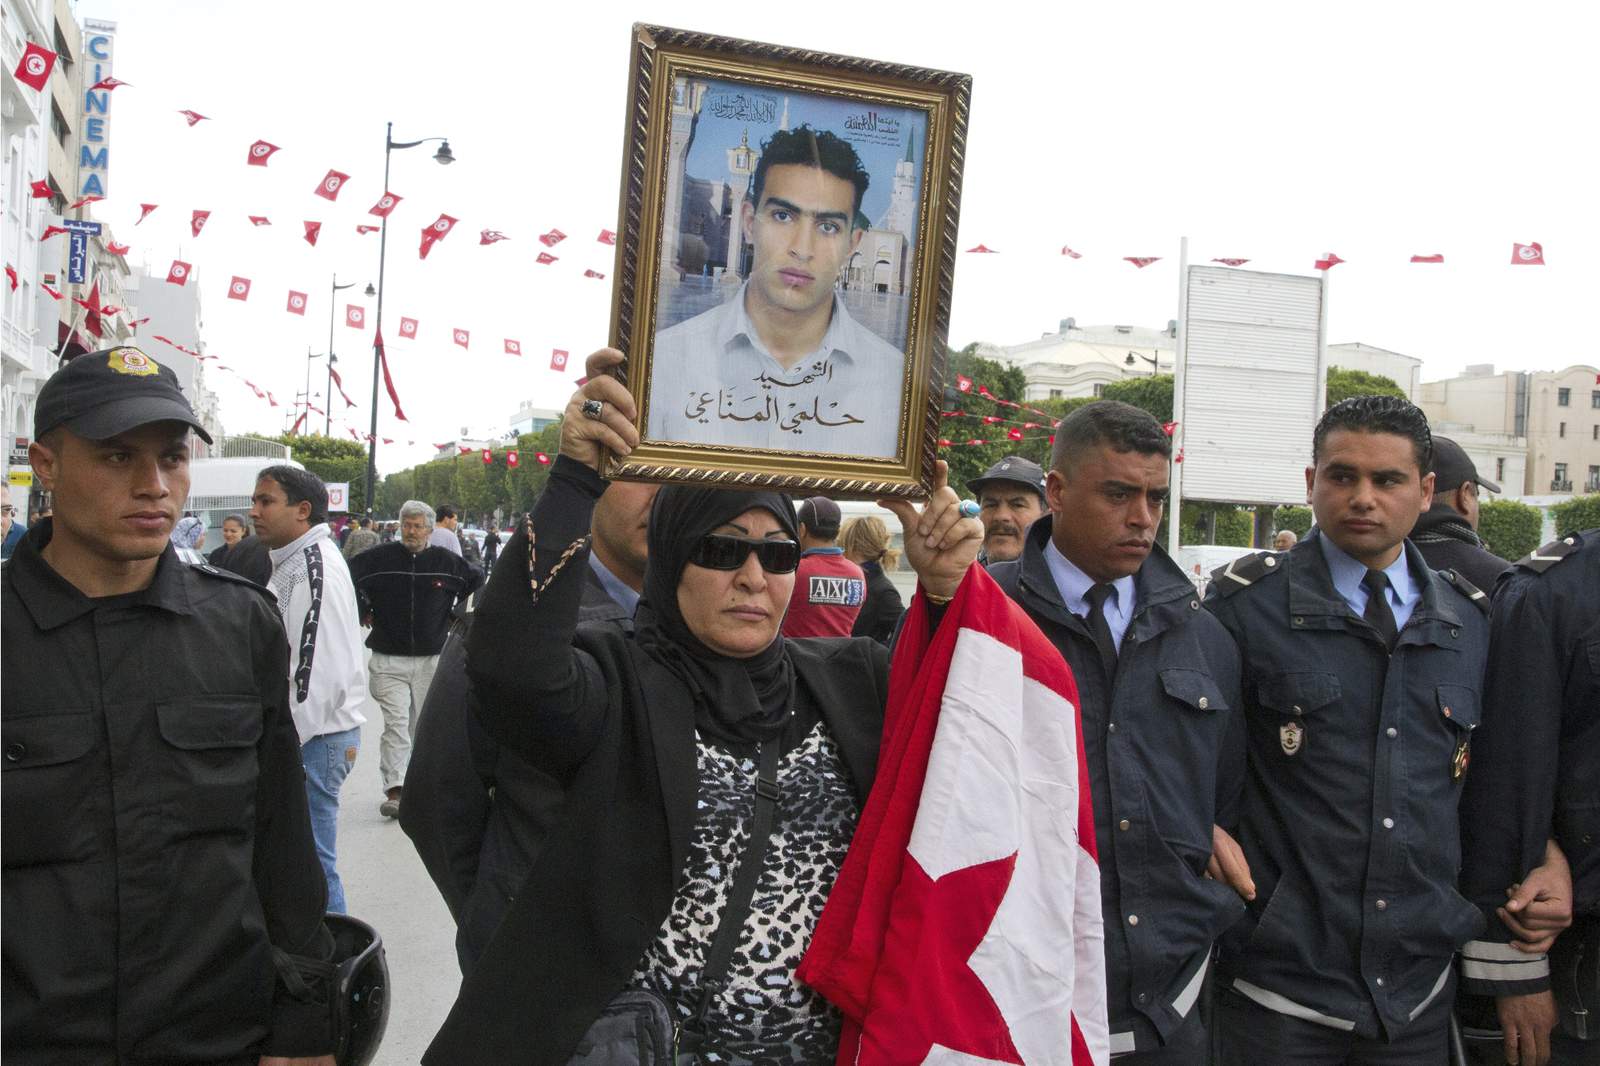 Nostalgia for old era challenges Tunisia’s democratic gains